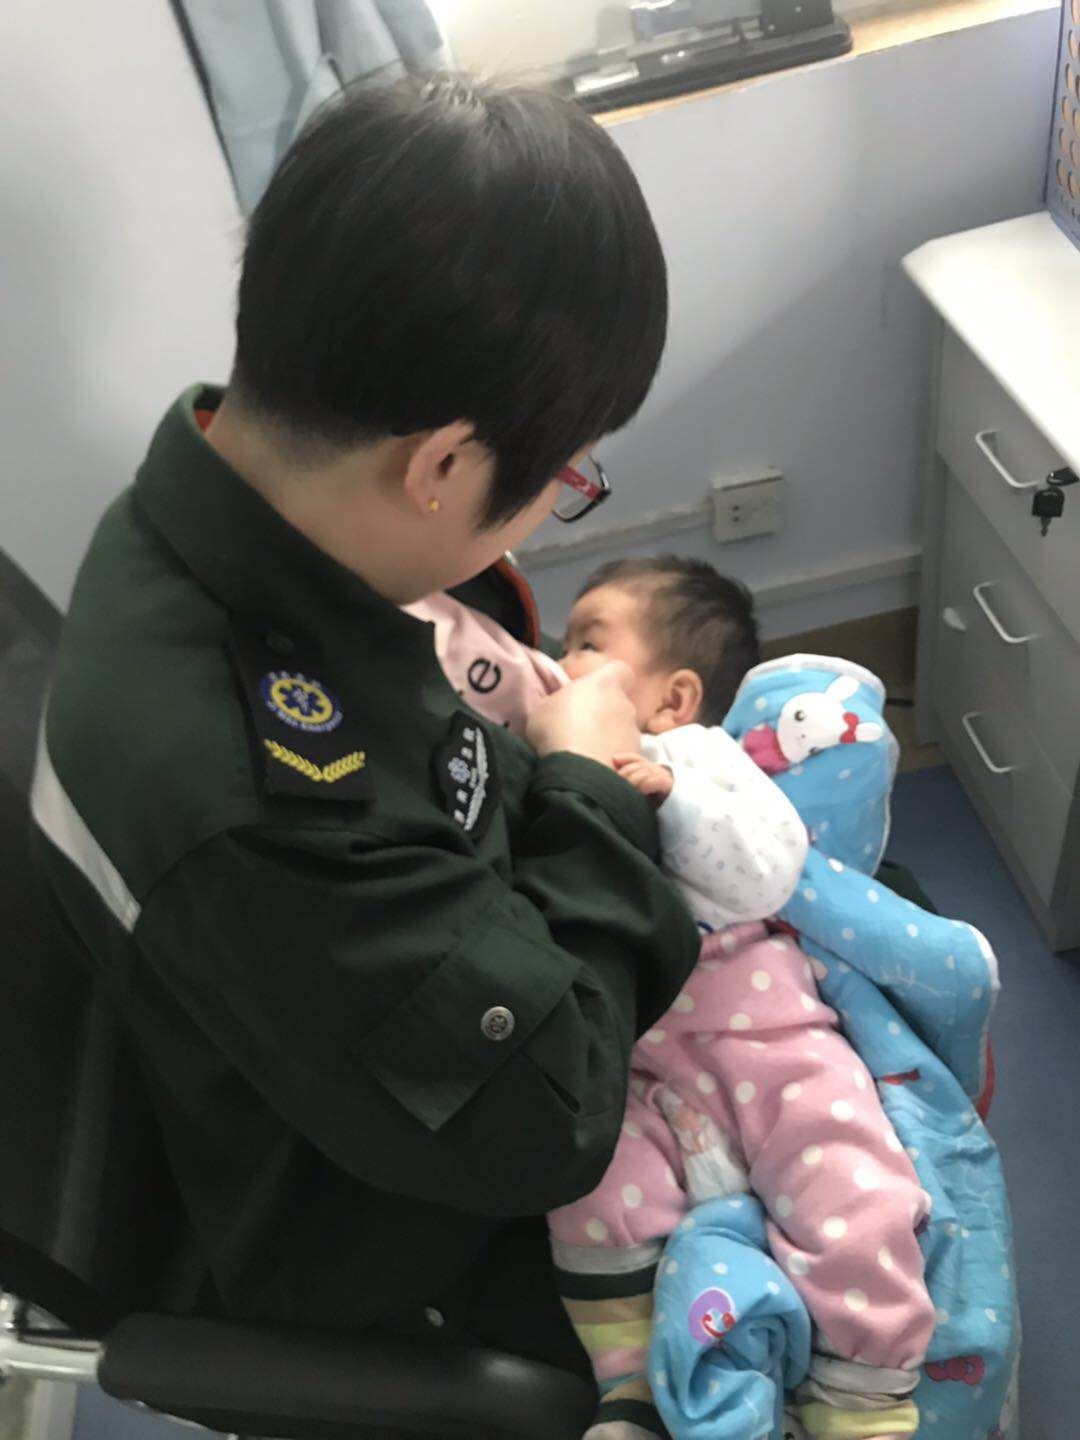 40秒丨妈妈进急诊室 孩子在外哭，商河哺乳期护师解衣喂宝宝